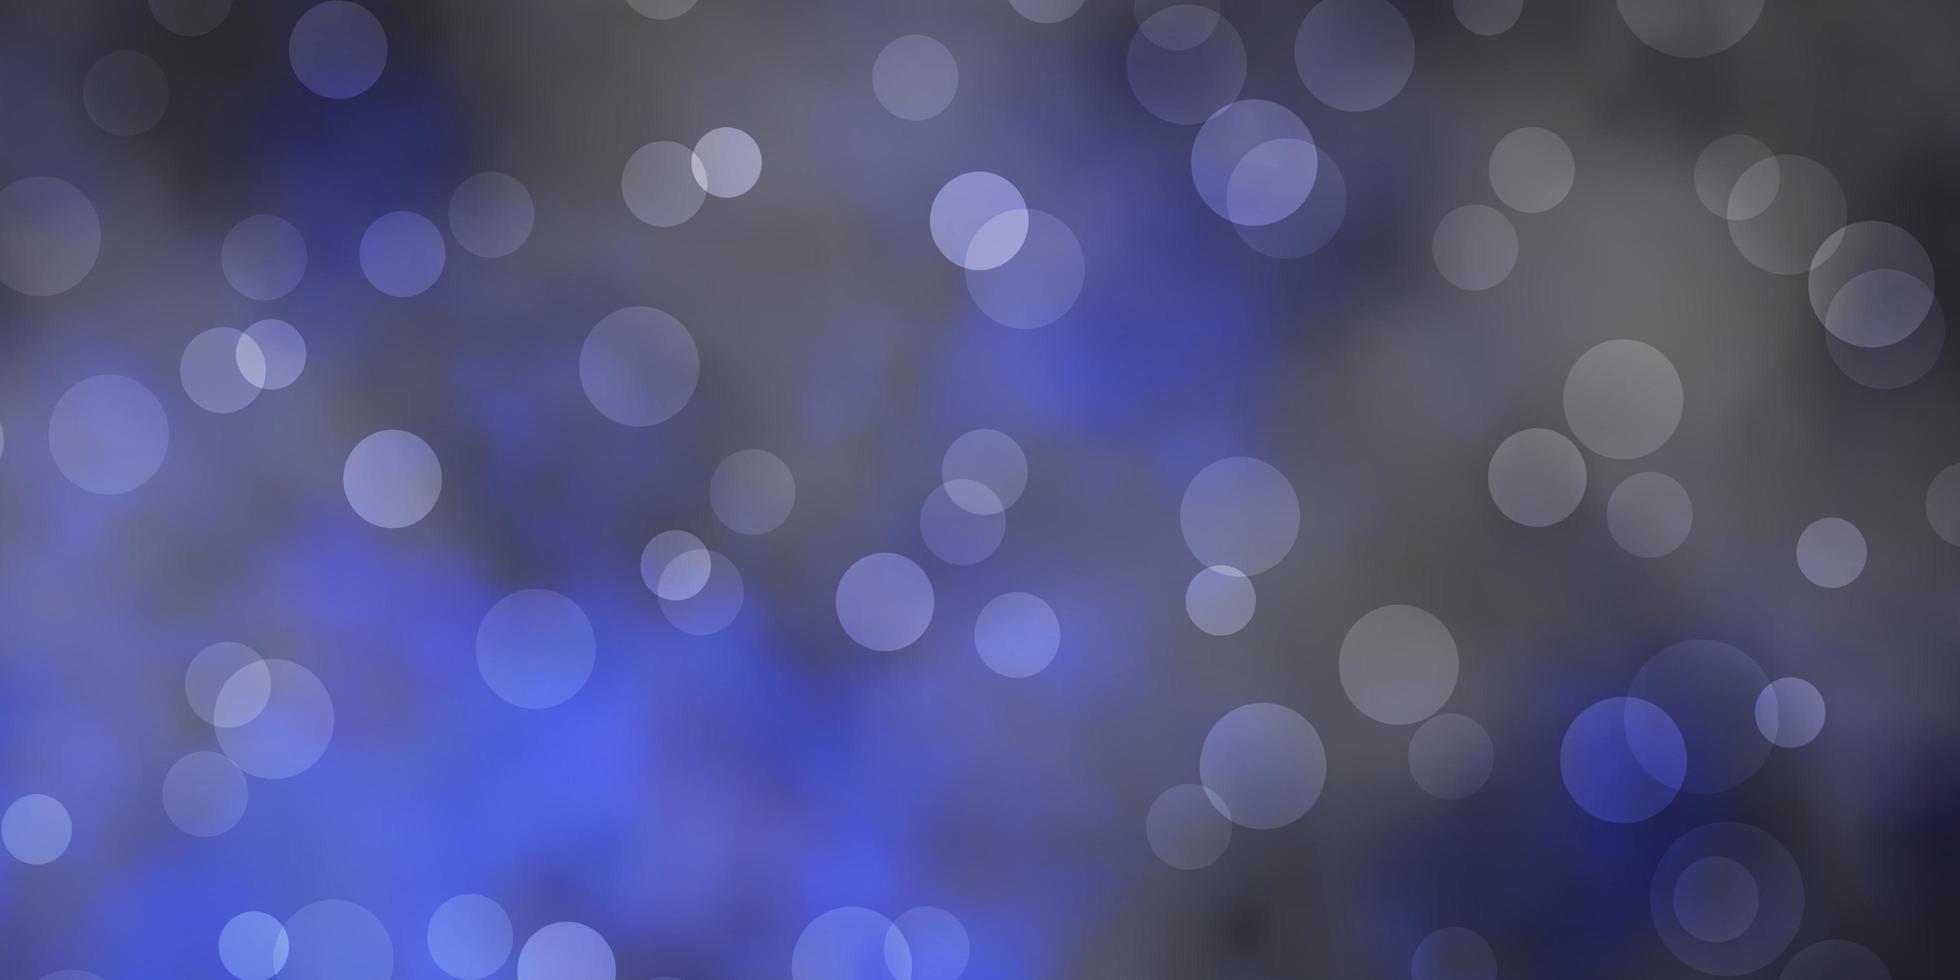 textura de vector azul oscuro con círculos. Ilustración abstracta moderna con formas circulares de colores. patrón para fondos de pantalla, cortinas.